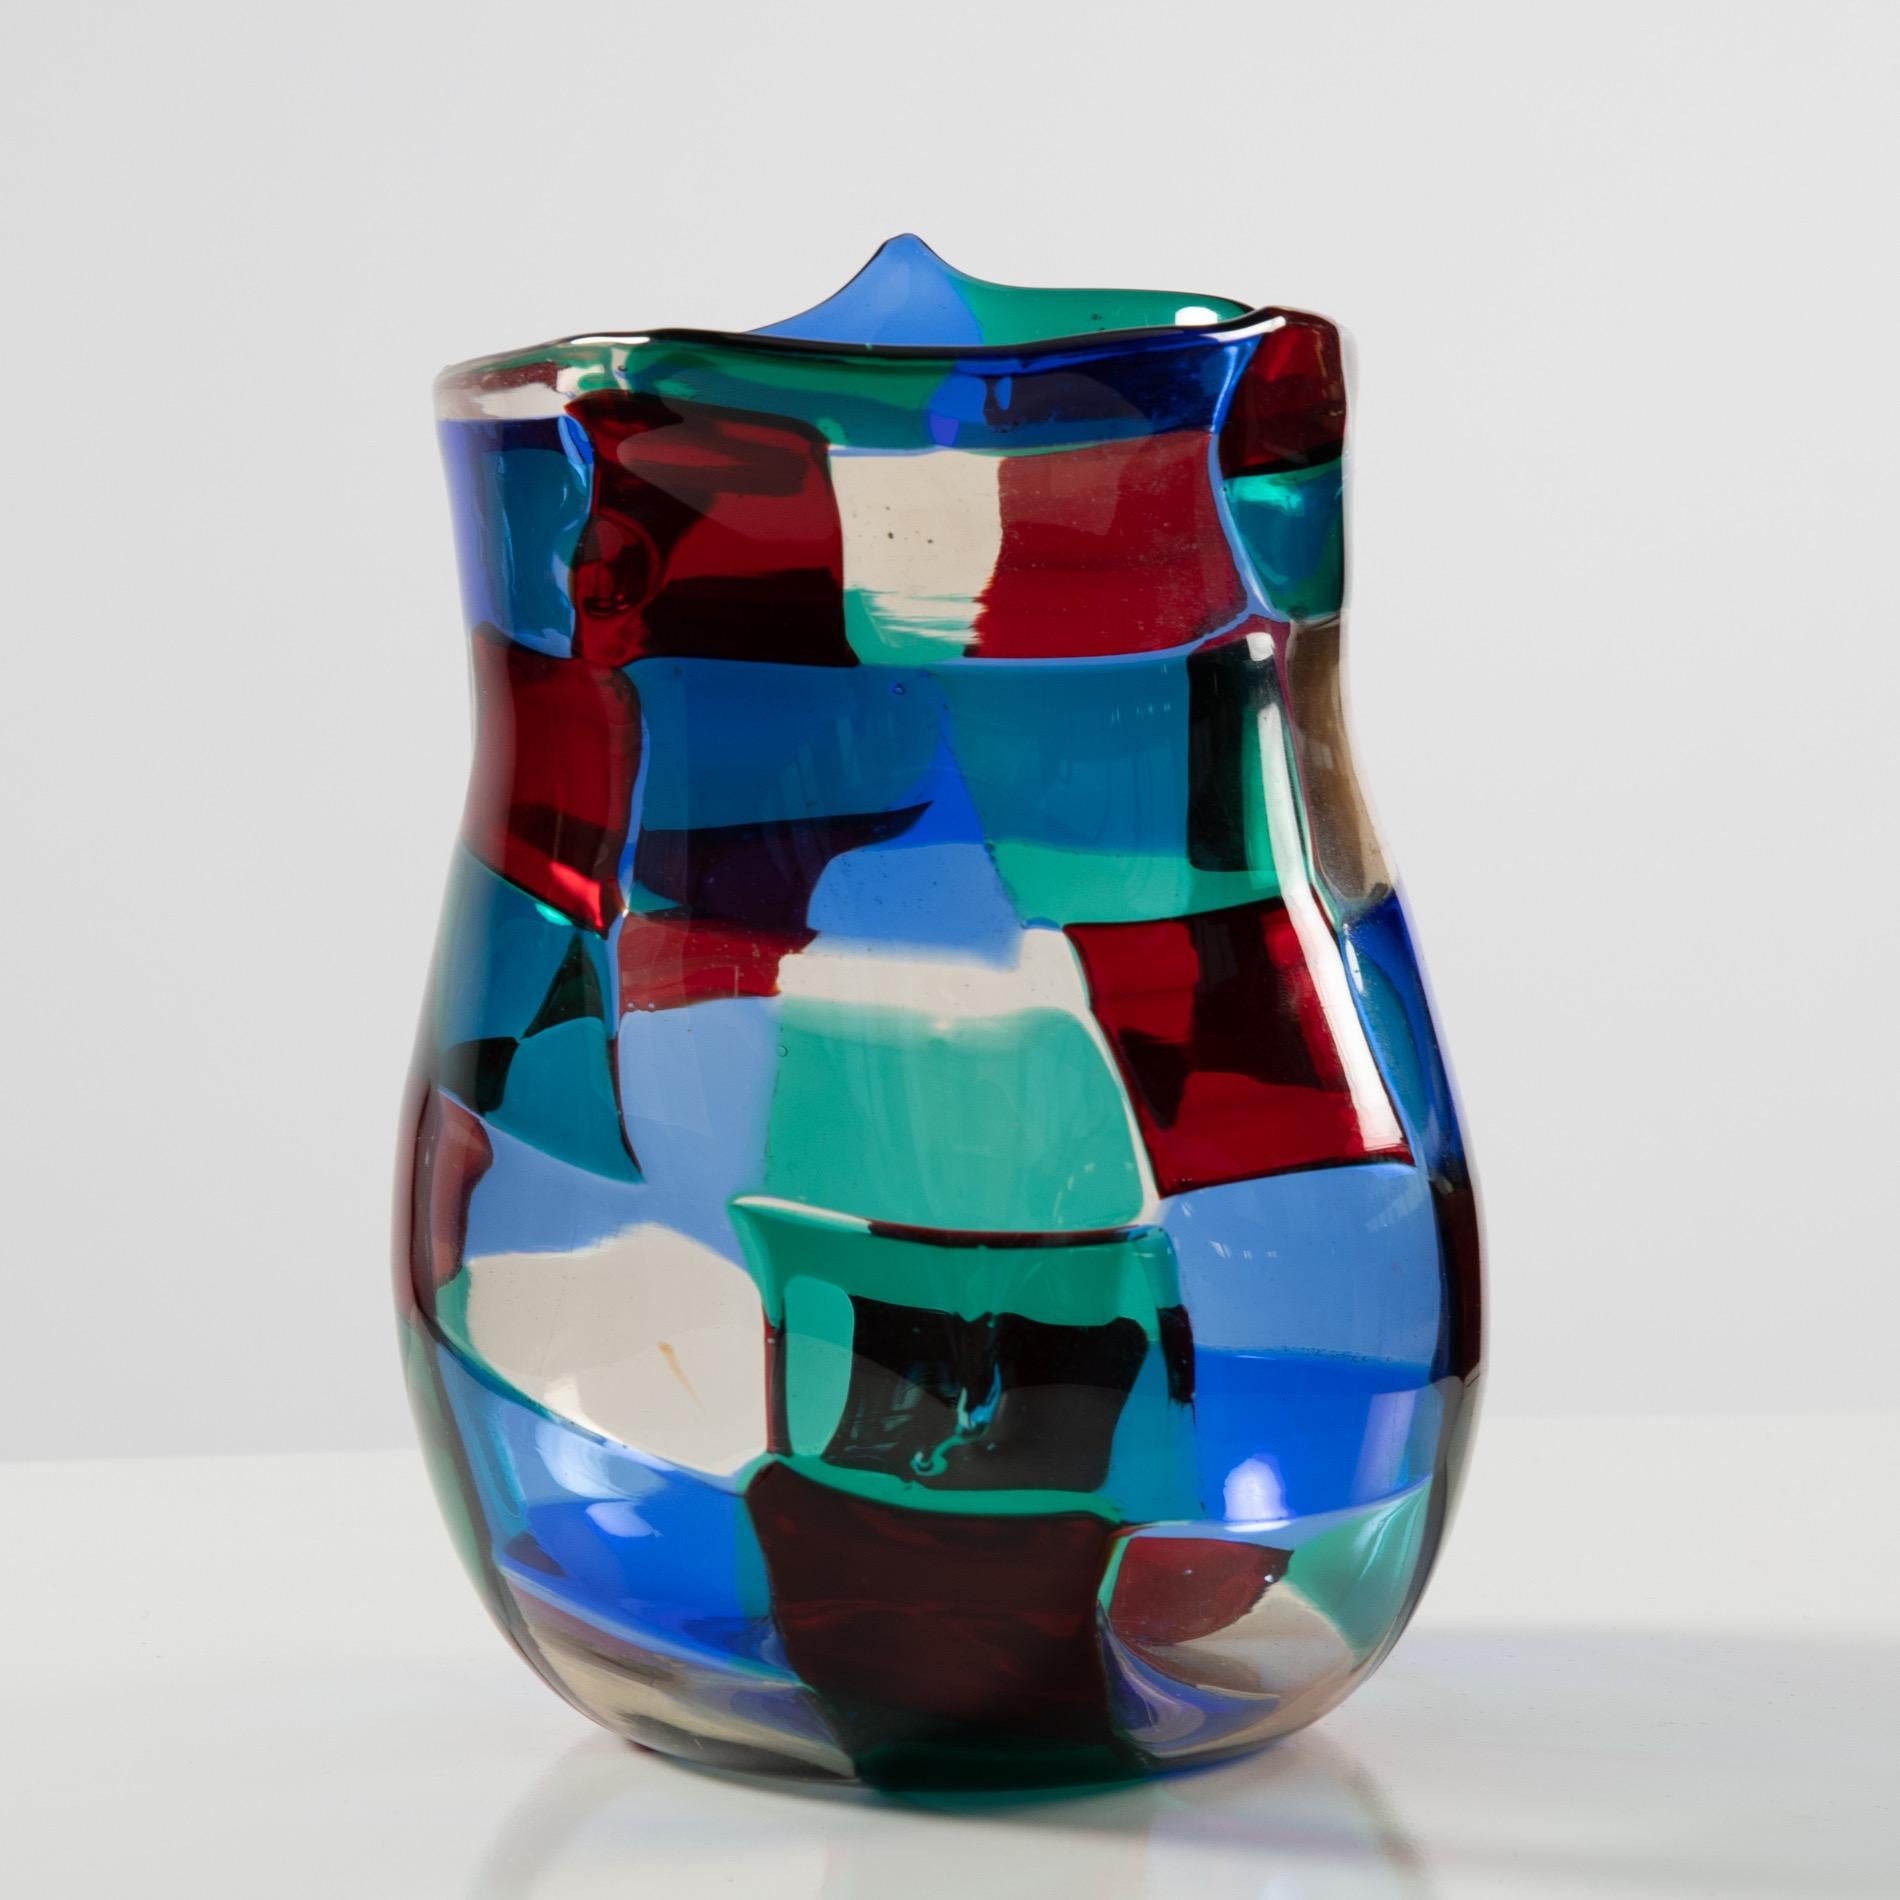 Italian Fulvio Bianconi, “Horned” Pezzato Vase in “Paris” Color Variation, Venini Murano